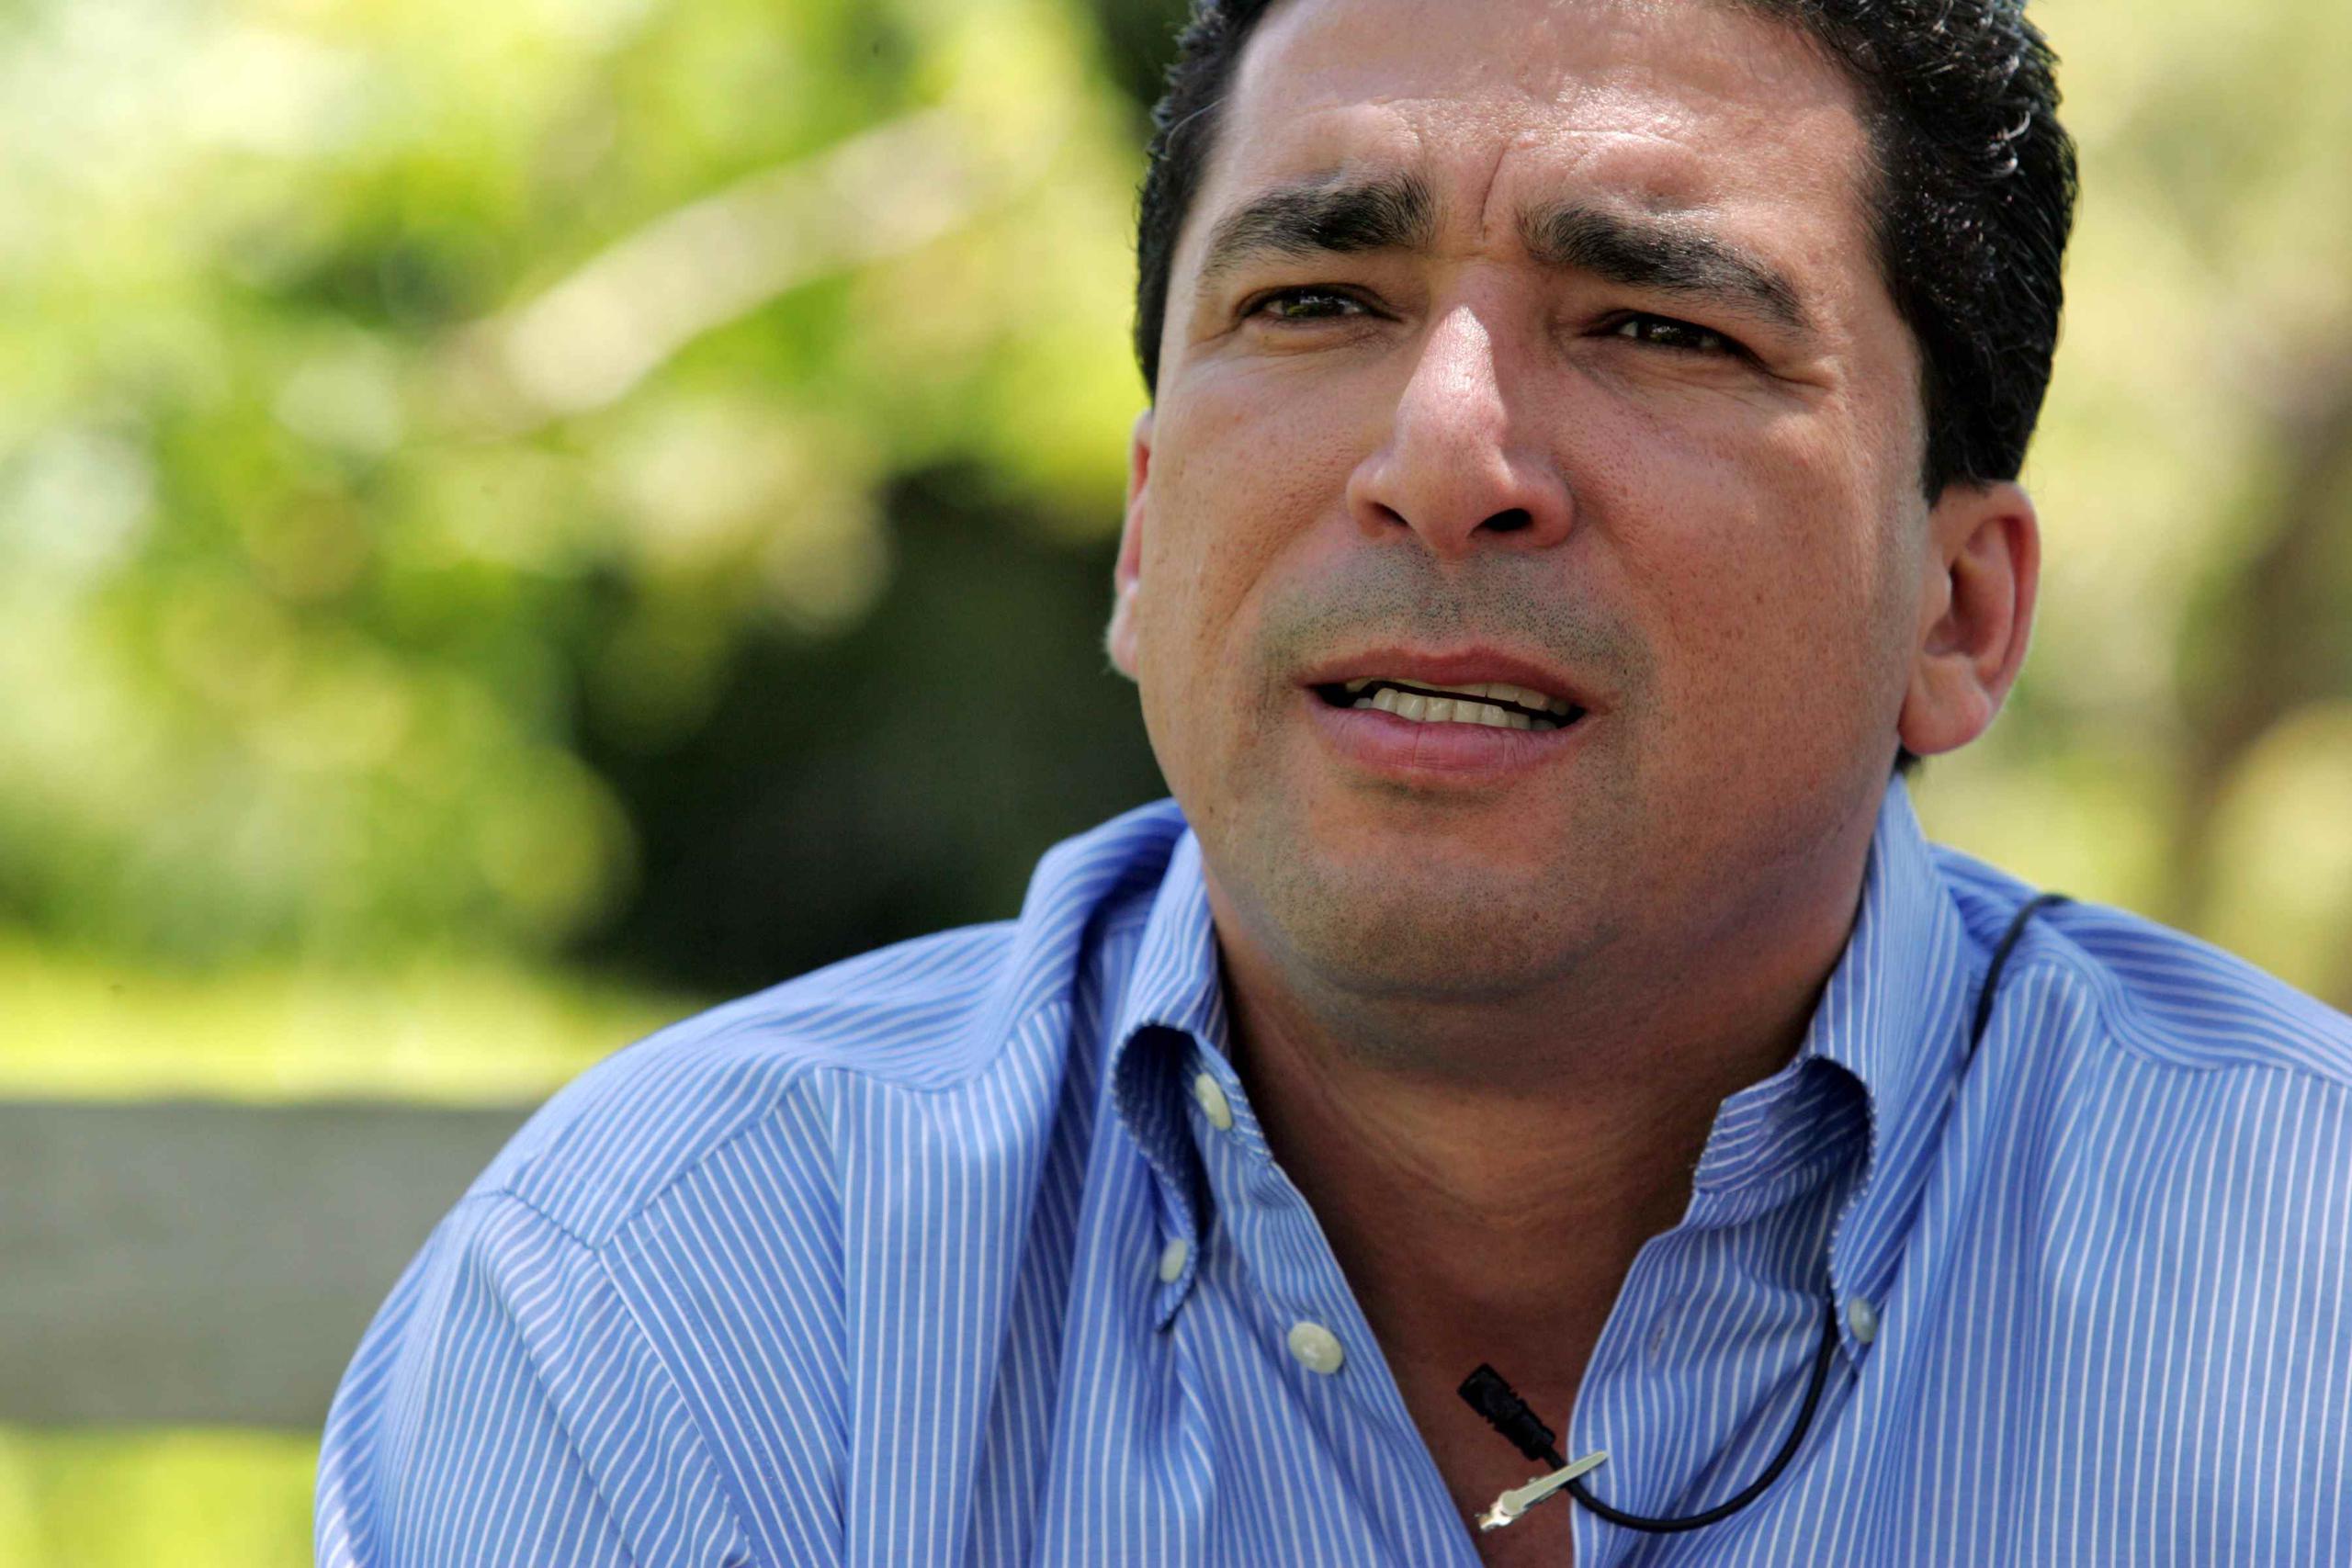 Ferdinand Pérez no entró en detalles sobre su opinión de que la Junta de Gobierno del PPD “no compone na’”. (GFR Media)